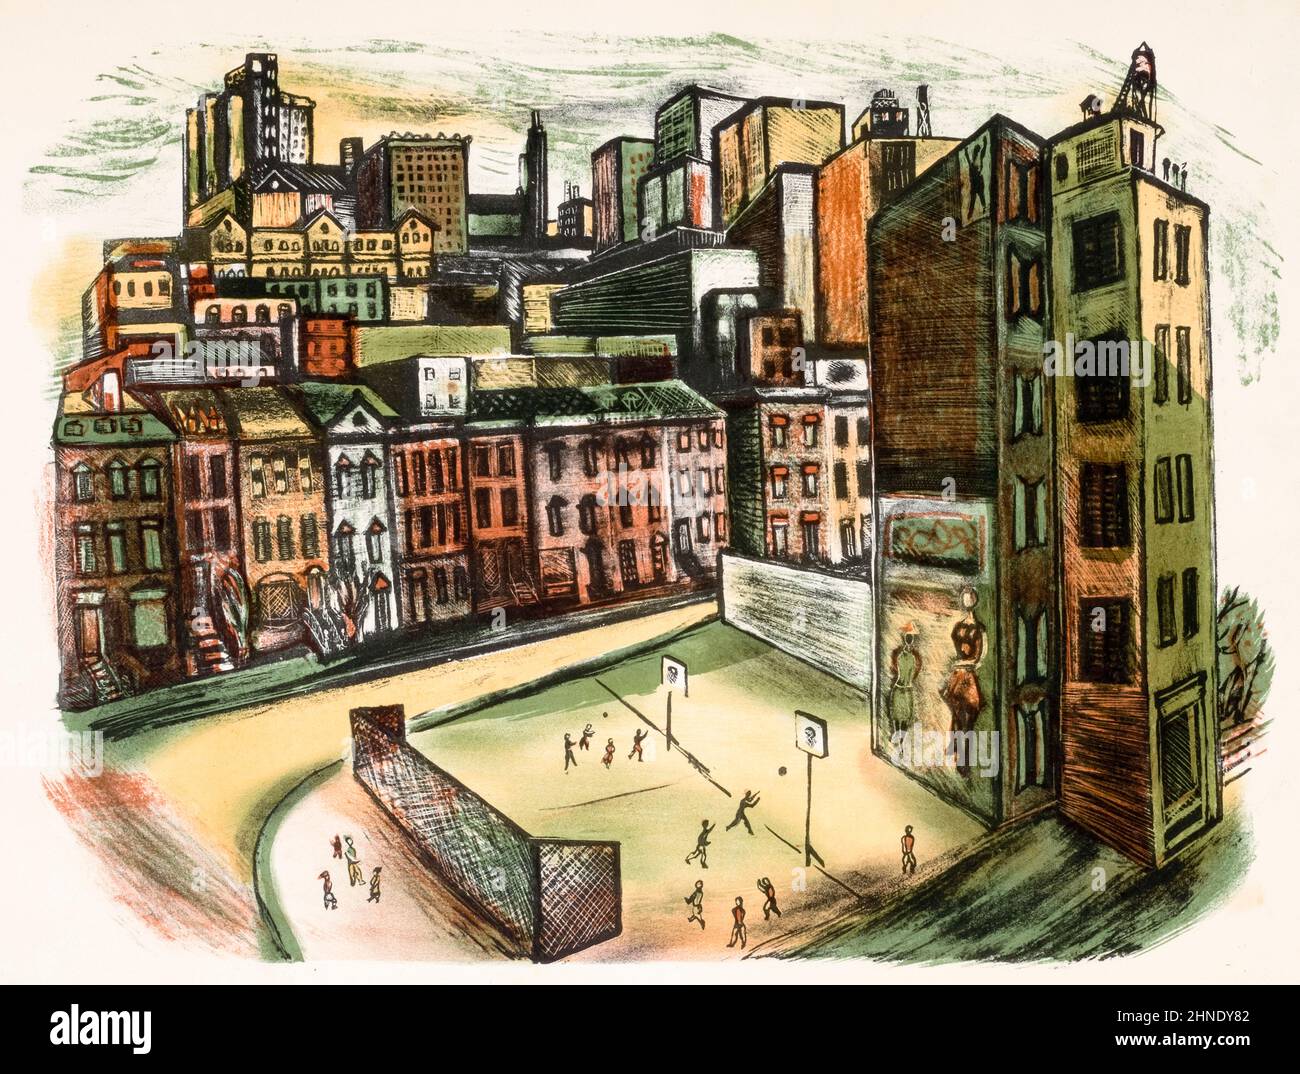 1930s América, escena de la ciudad con parque infantil, (cancha de baloncesto), arte New Deal, impresión litográfica, 1933-1943 - artista no identificado Foto de stock